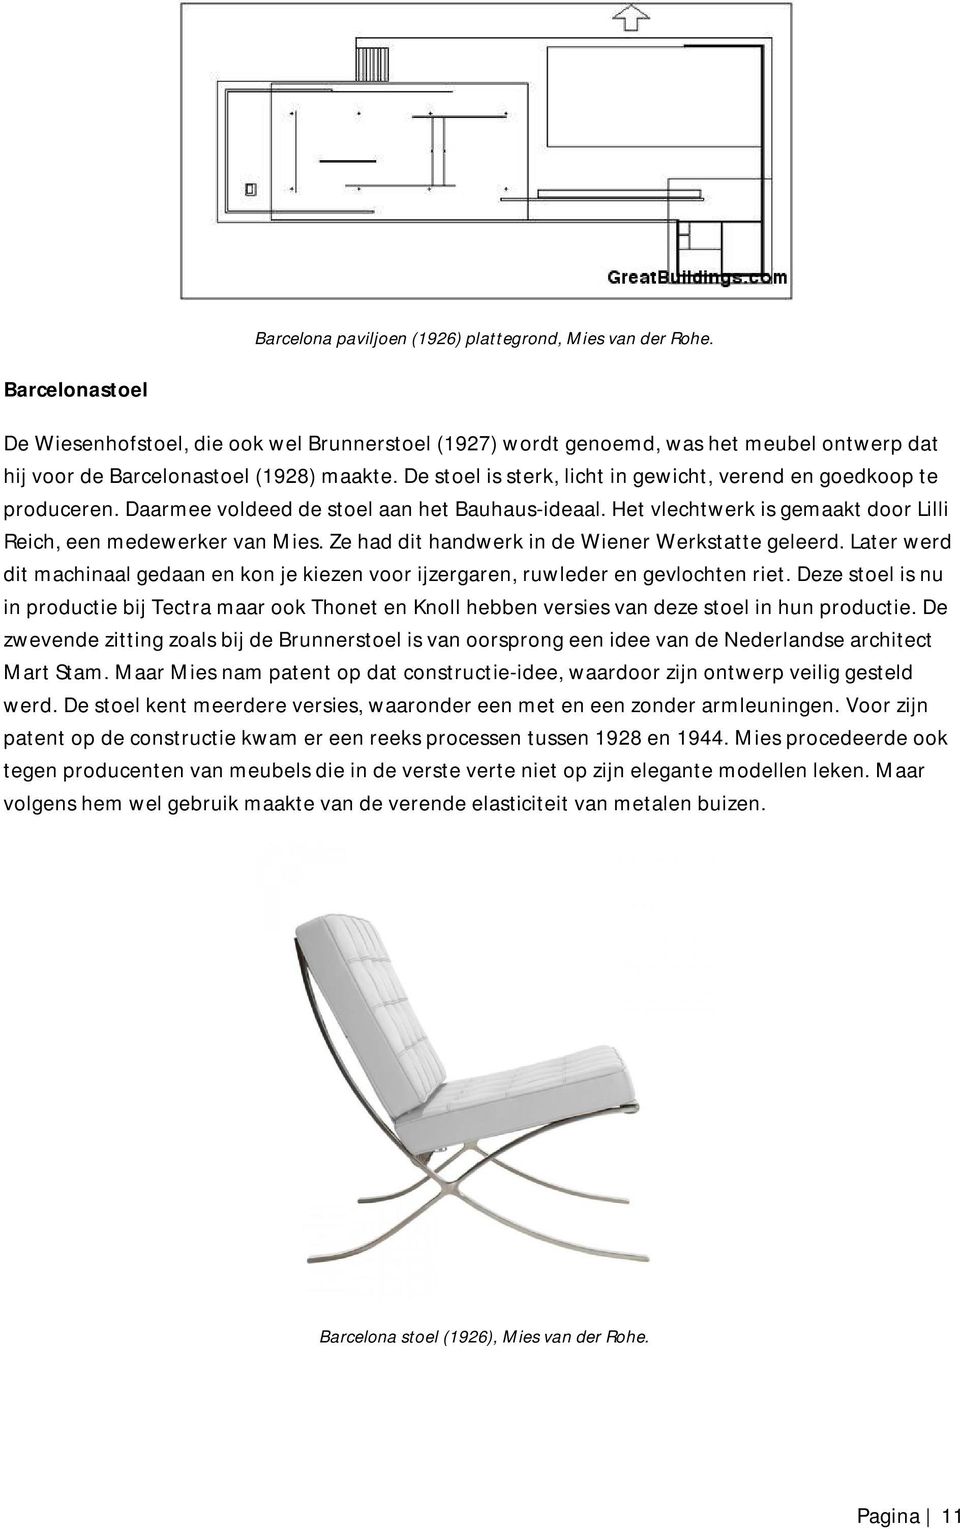 De stoel is sterk, licht in gewicht, verend en goedkoop te produceren. Daarmee voldeed de stoel aan het Bauhaus-ideaal. Het vlechtwerk is gemaakt door Lilli Reich, een medewerker van Mies.